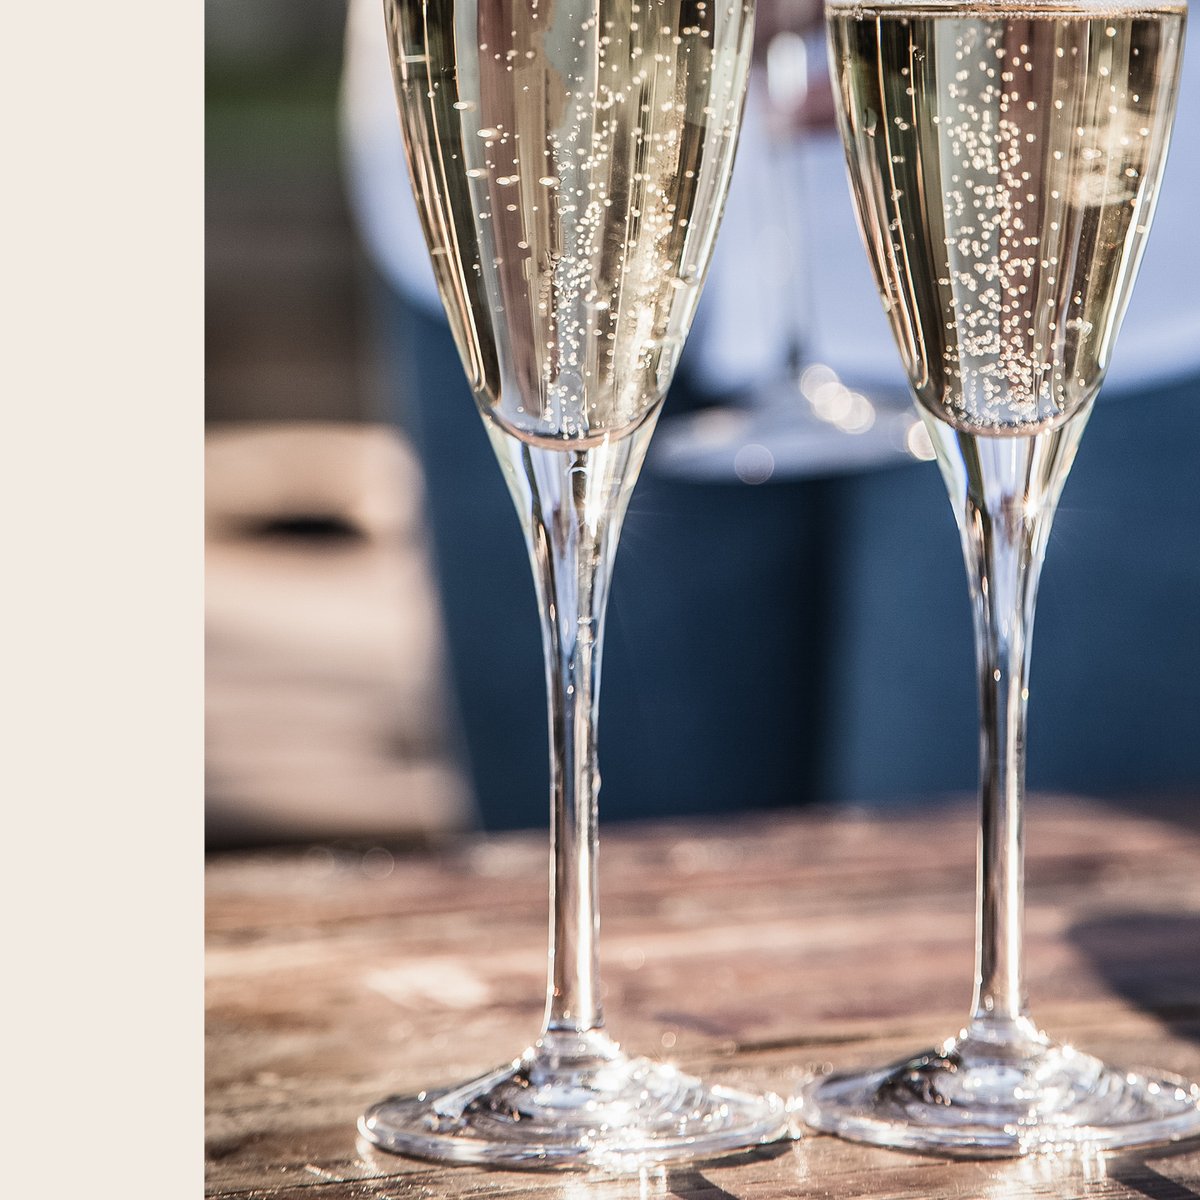 Ce mois-ci, on vous gâte avec une offre exceptionnelle spéciale champagne créée avec @MoetHennessy. Venez déguster des cuvées extraordinaires à un prix très doux dans chacun de nos restaurants. Pour en savoir +, direction le #PavillonLedoyen ! #champagne #yannickalleno